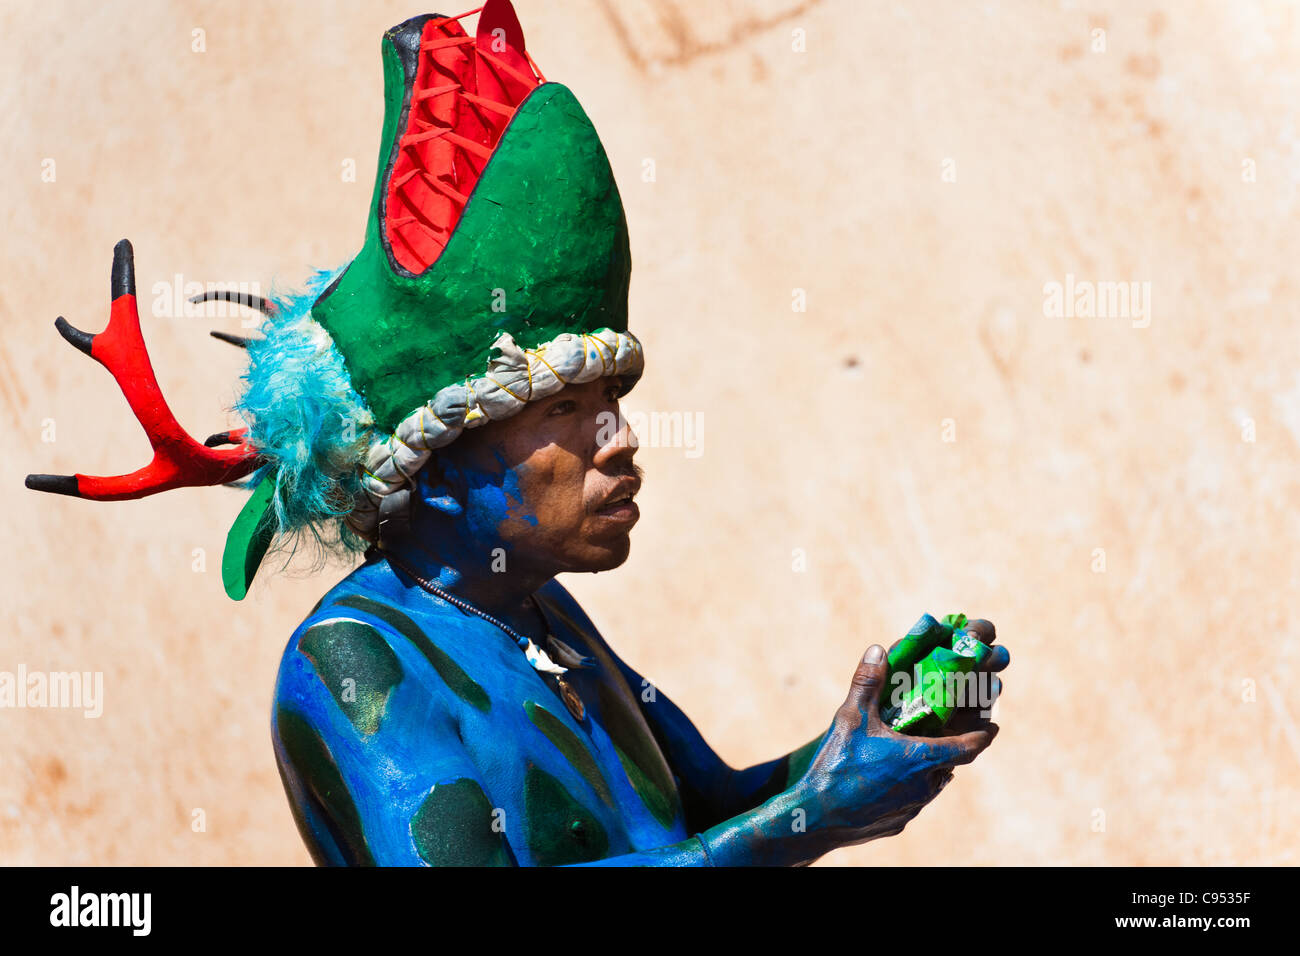 Ein Cora indischen Mann, trägt eine bunte Dämonenmaske, beteiligt sich an der religiösen Zeremonie der Karwoche in Jesús María, Mexiko. Stockfoto